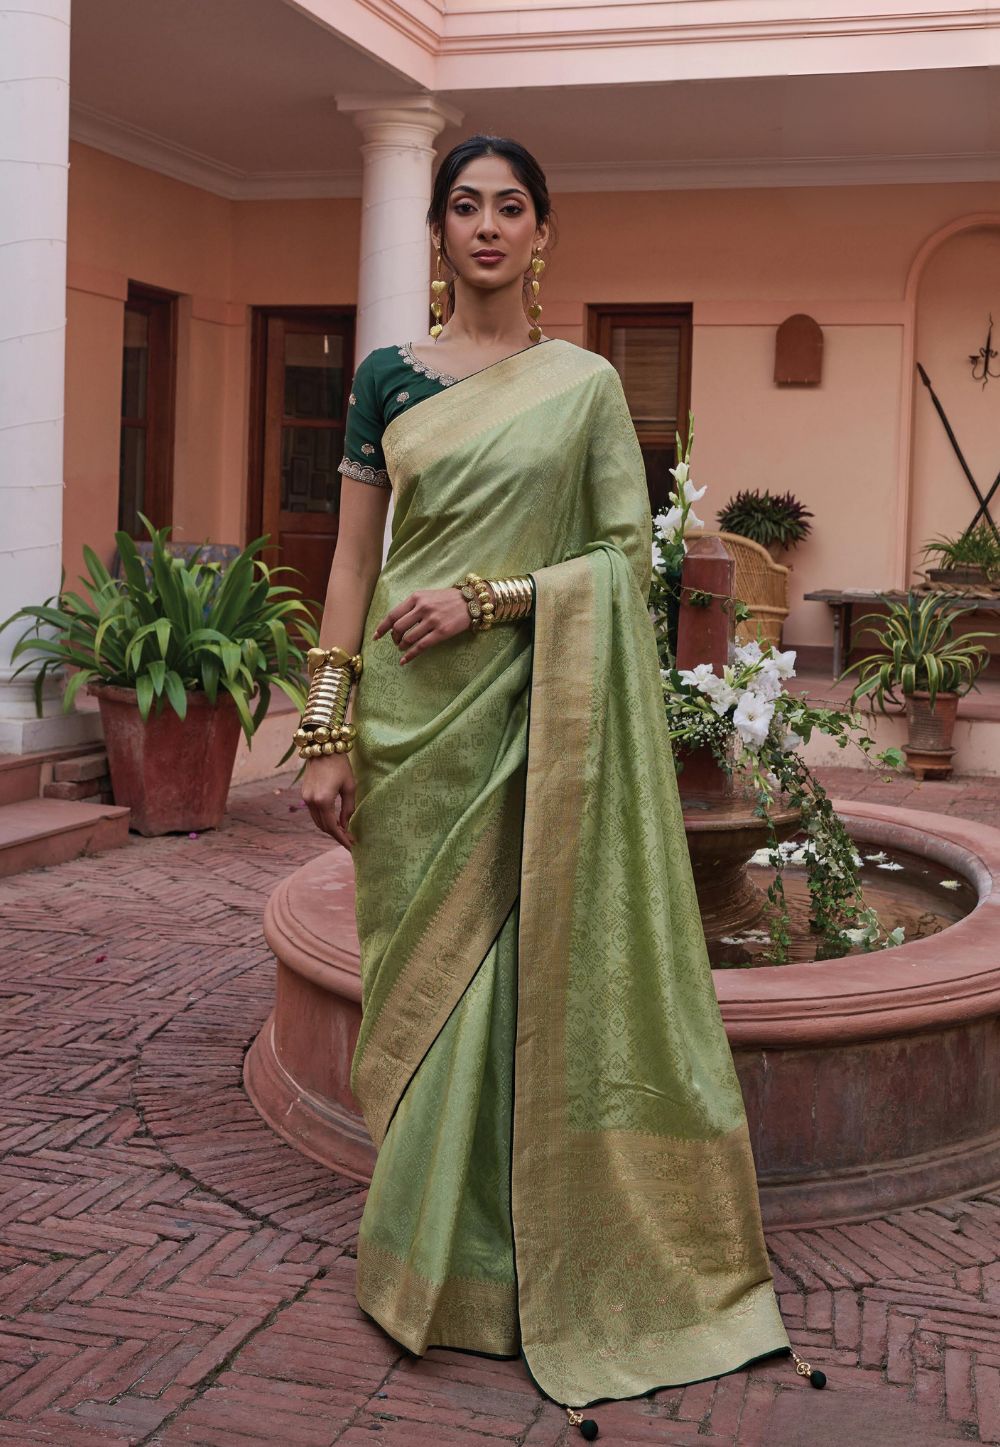 Woven Art Silk Saree in Light Green